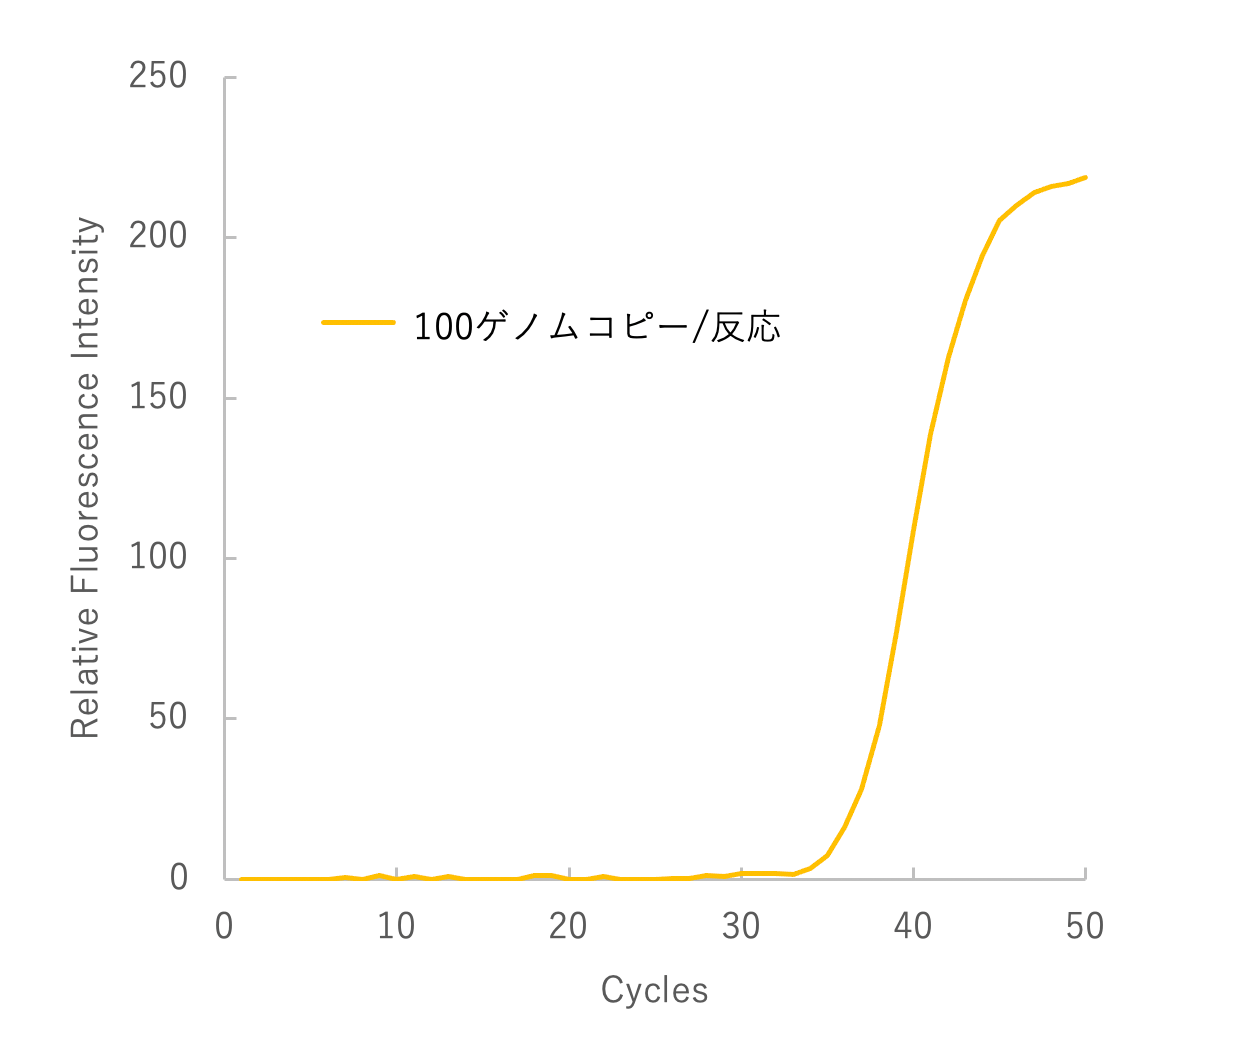 オウム病クラミジア ゲノムDNAの検出（１） 測定時間比較のグラフ